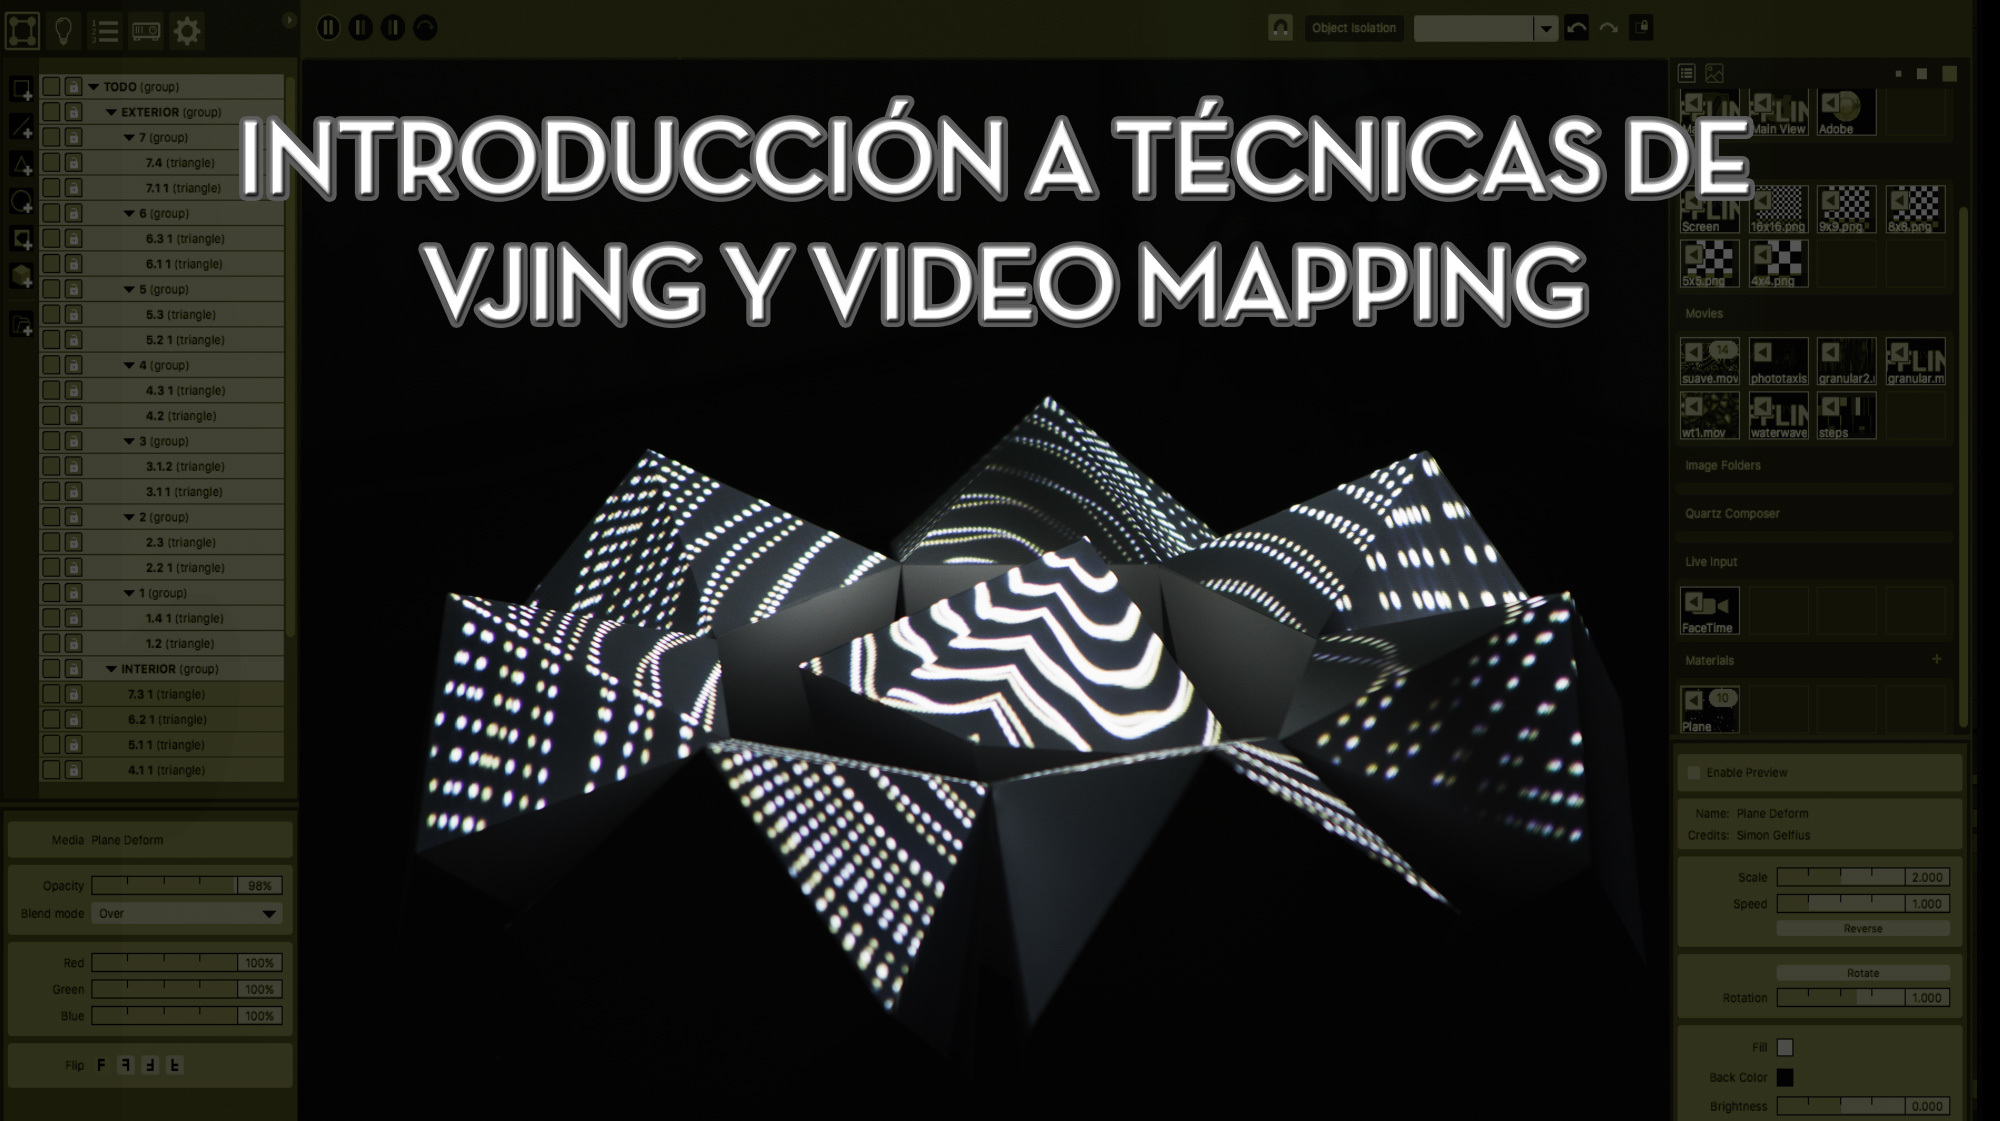 Curso sobre ‘video mapping’ y técnicas de ‘Vjing’ en la Asociación Atlas